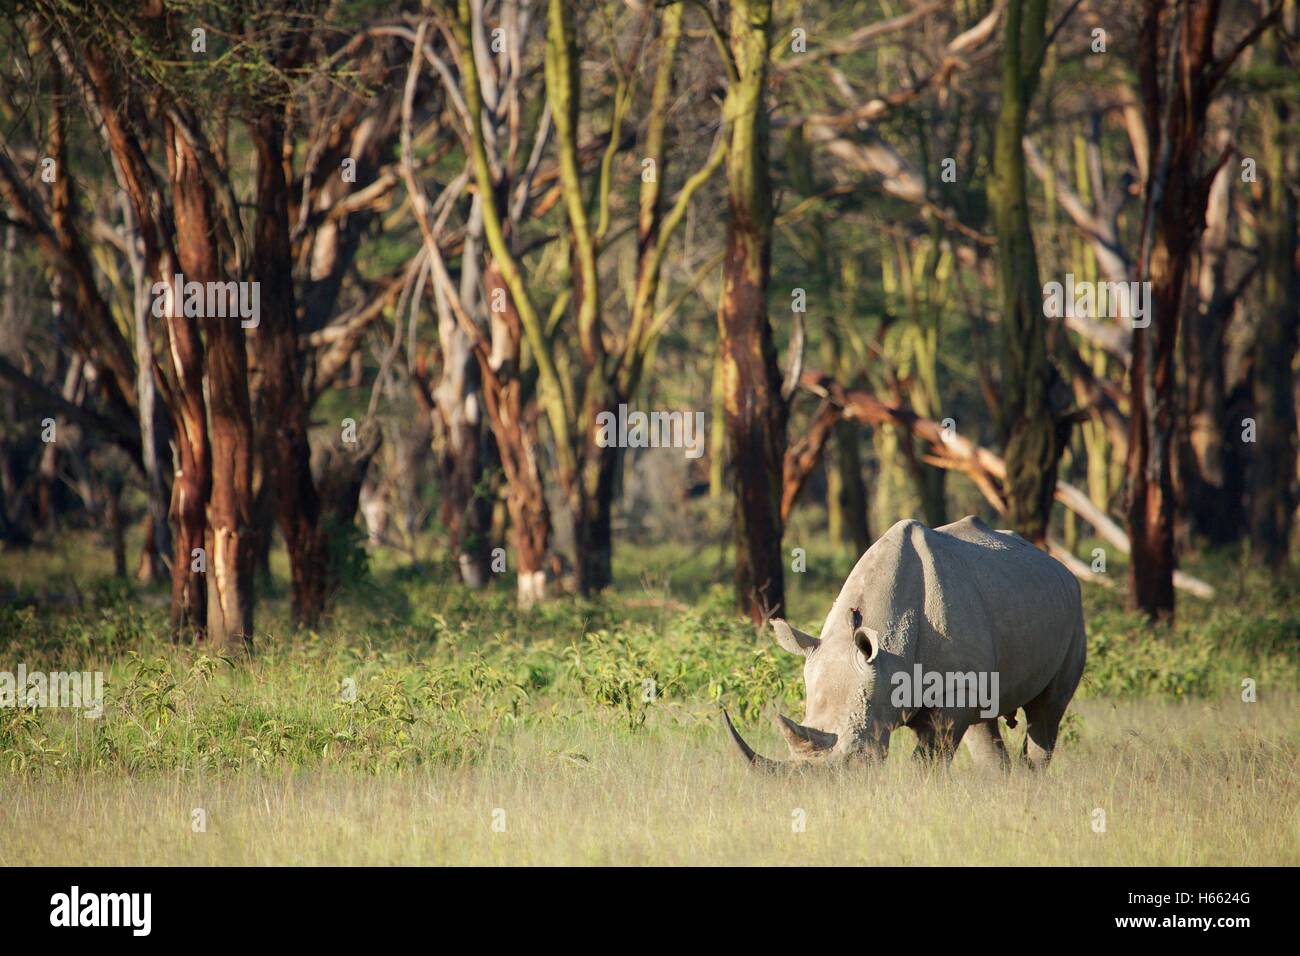 An endangered white rhino viewed on safari in Lake Nakuru, Kenya Stock Photo